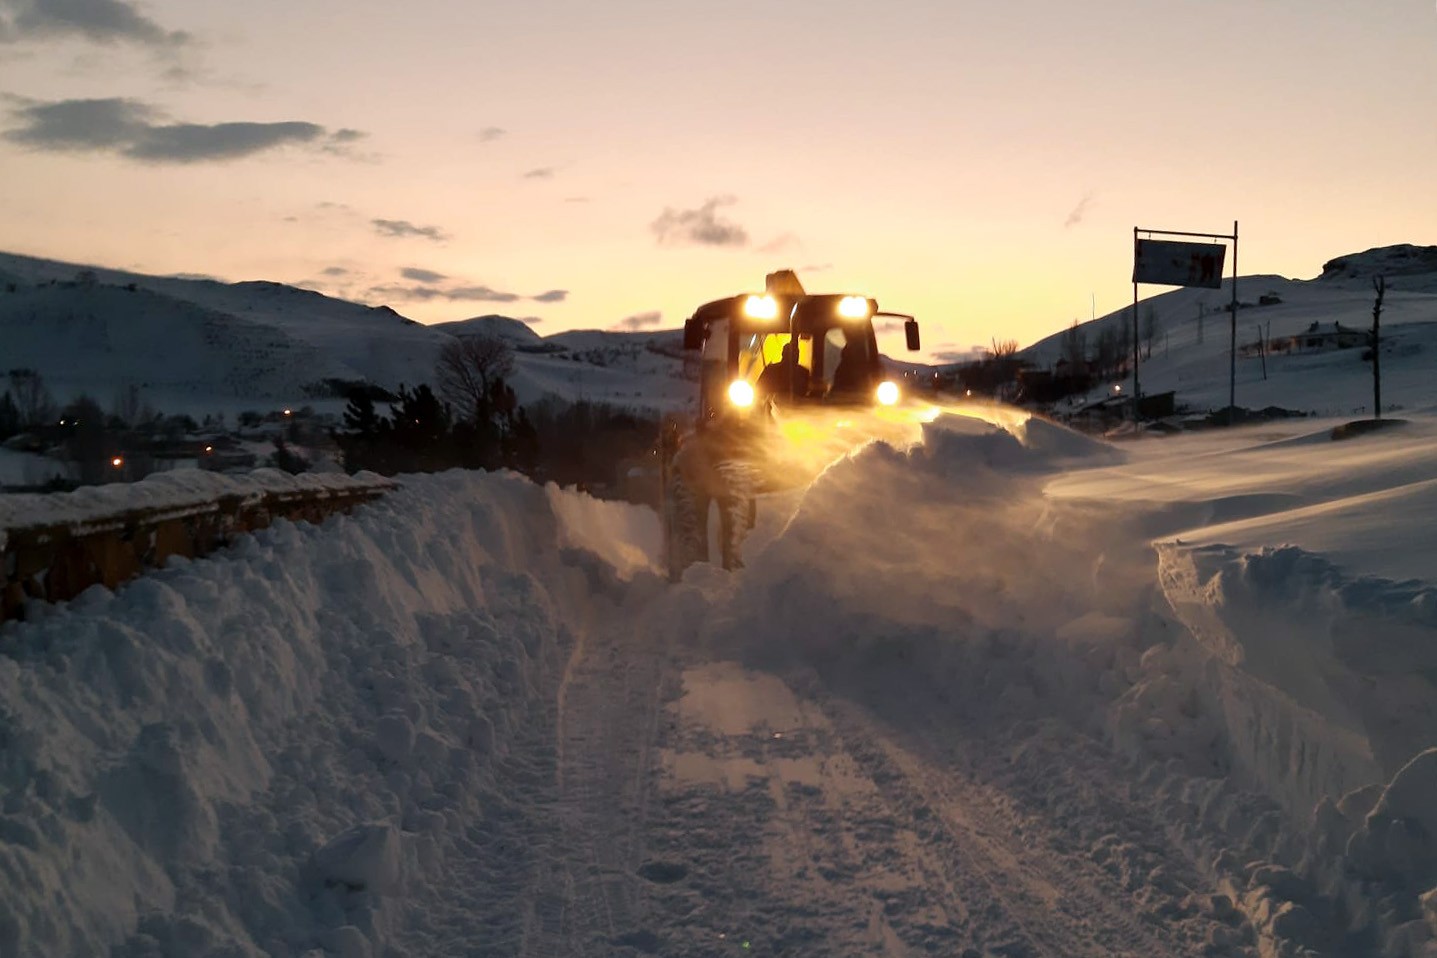 Gümüşhane’de karla kaplı köy yolları açılıyor #gumushane